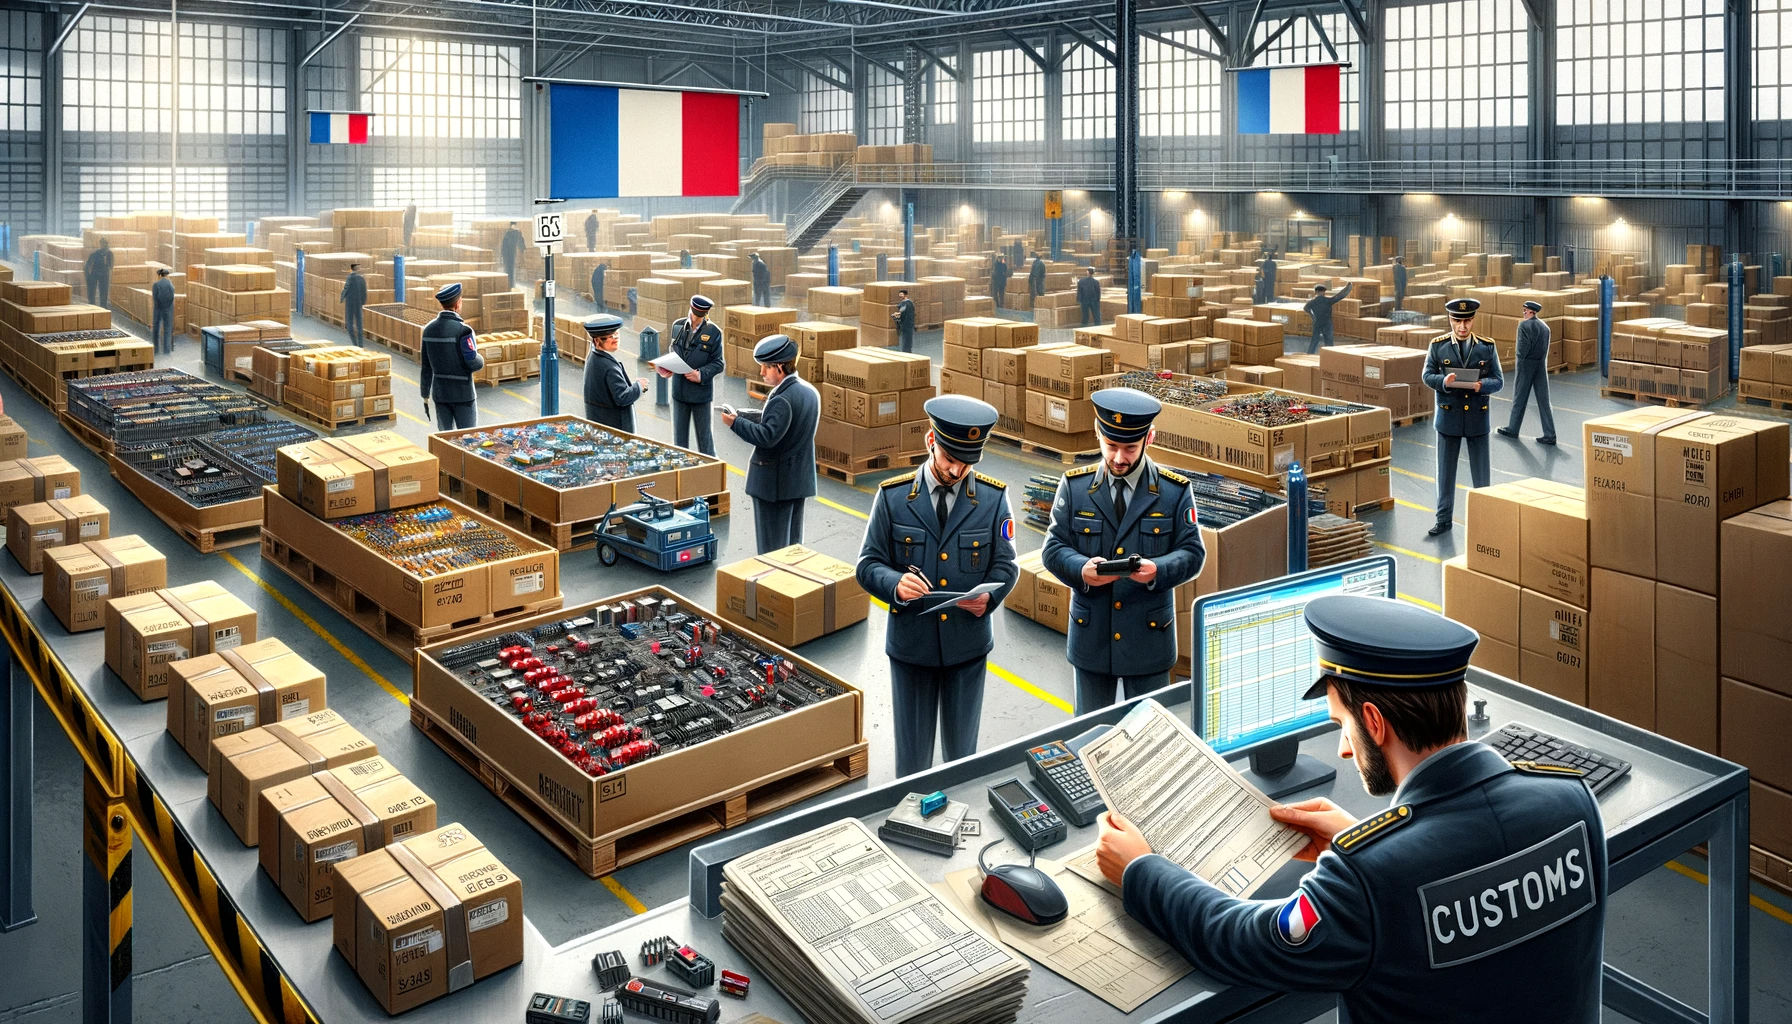 Une photo d'un entrepôt rempli de cartons et de personnes, mettant en valeur une scène animée chez un Fournisseur.